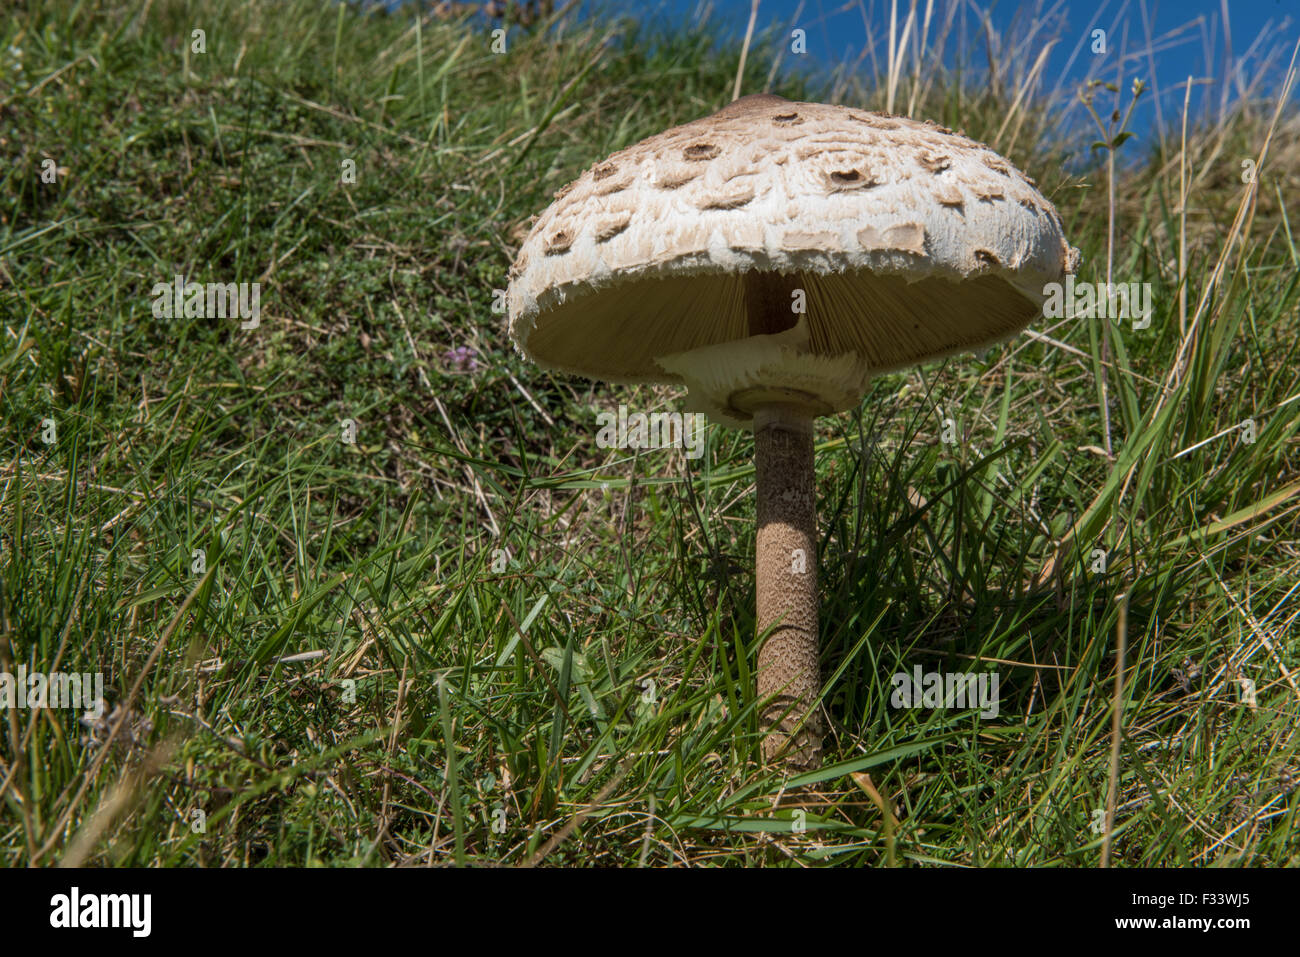 The Shaggy Parasol Mushroom Stock Photo